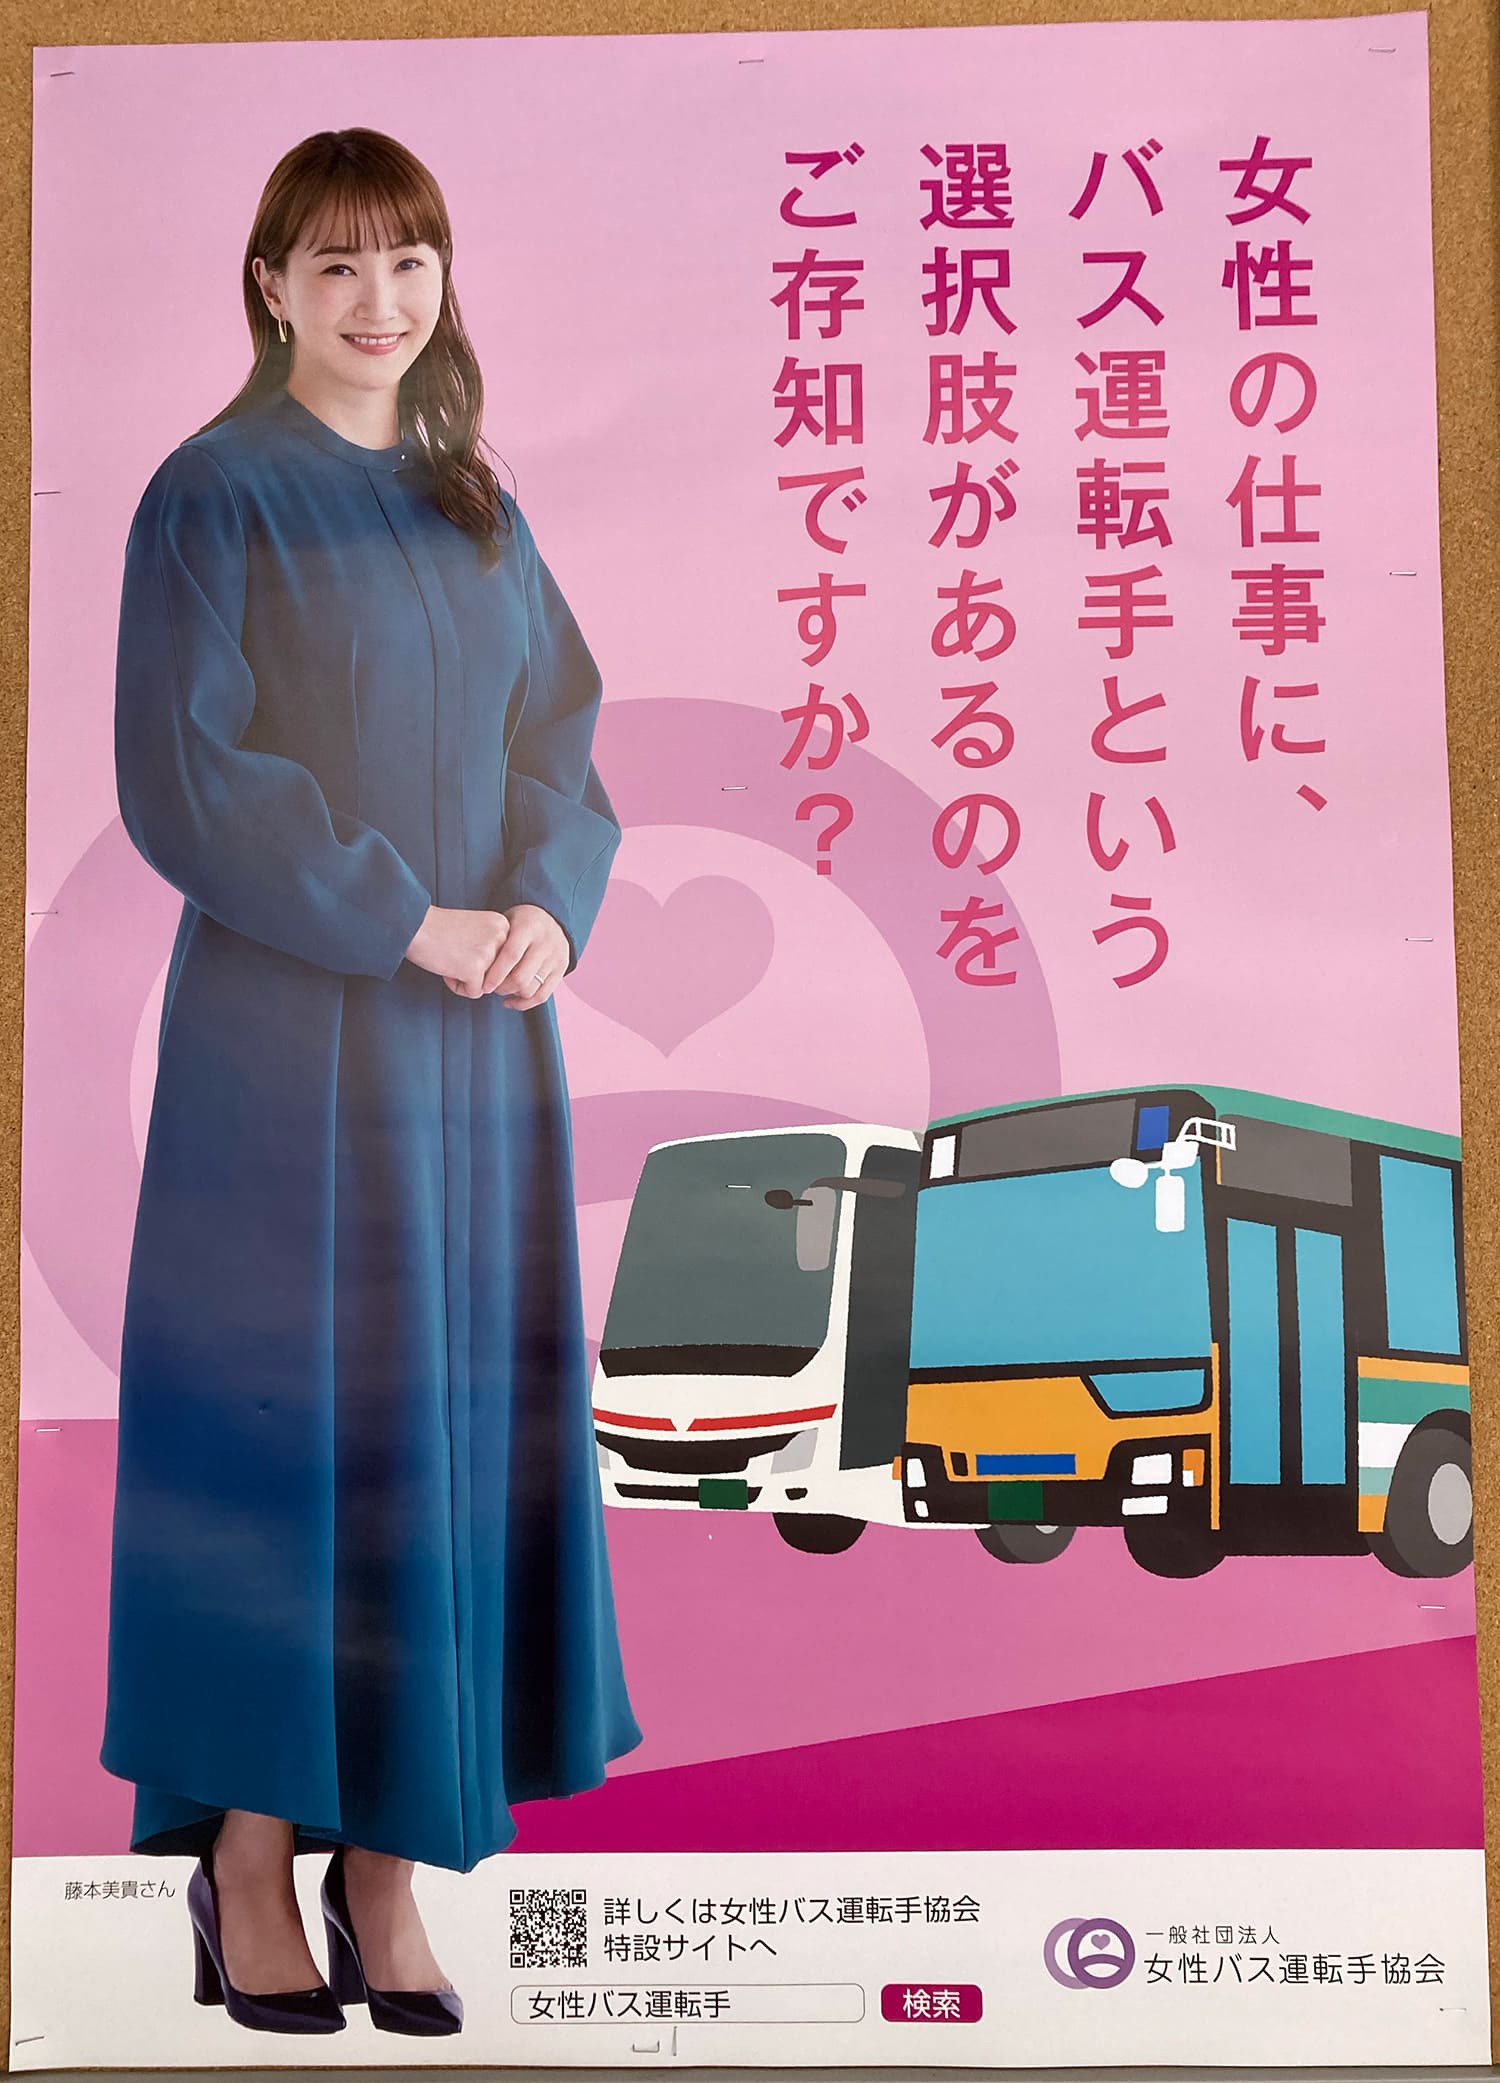 藤本美貴 女性バス運転手協会